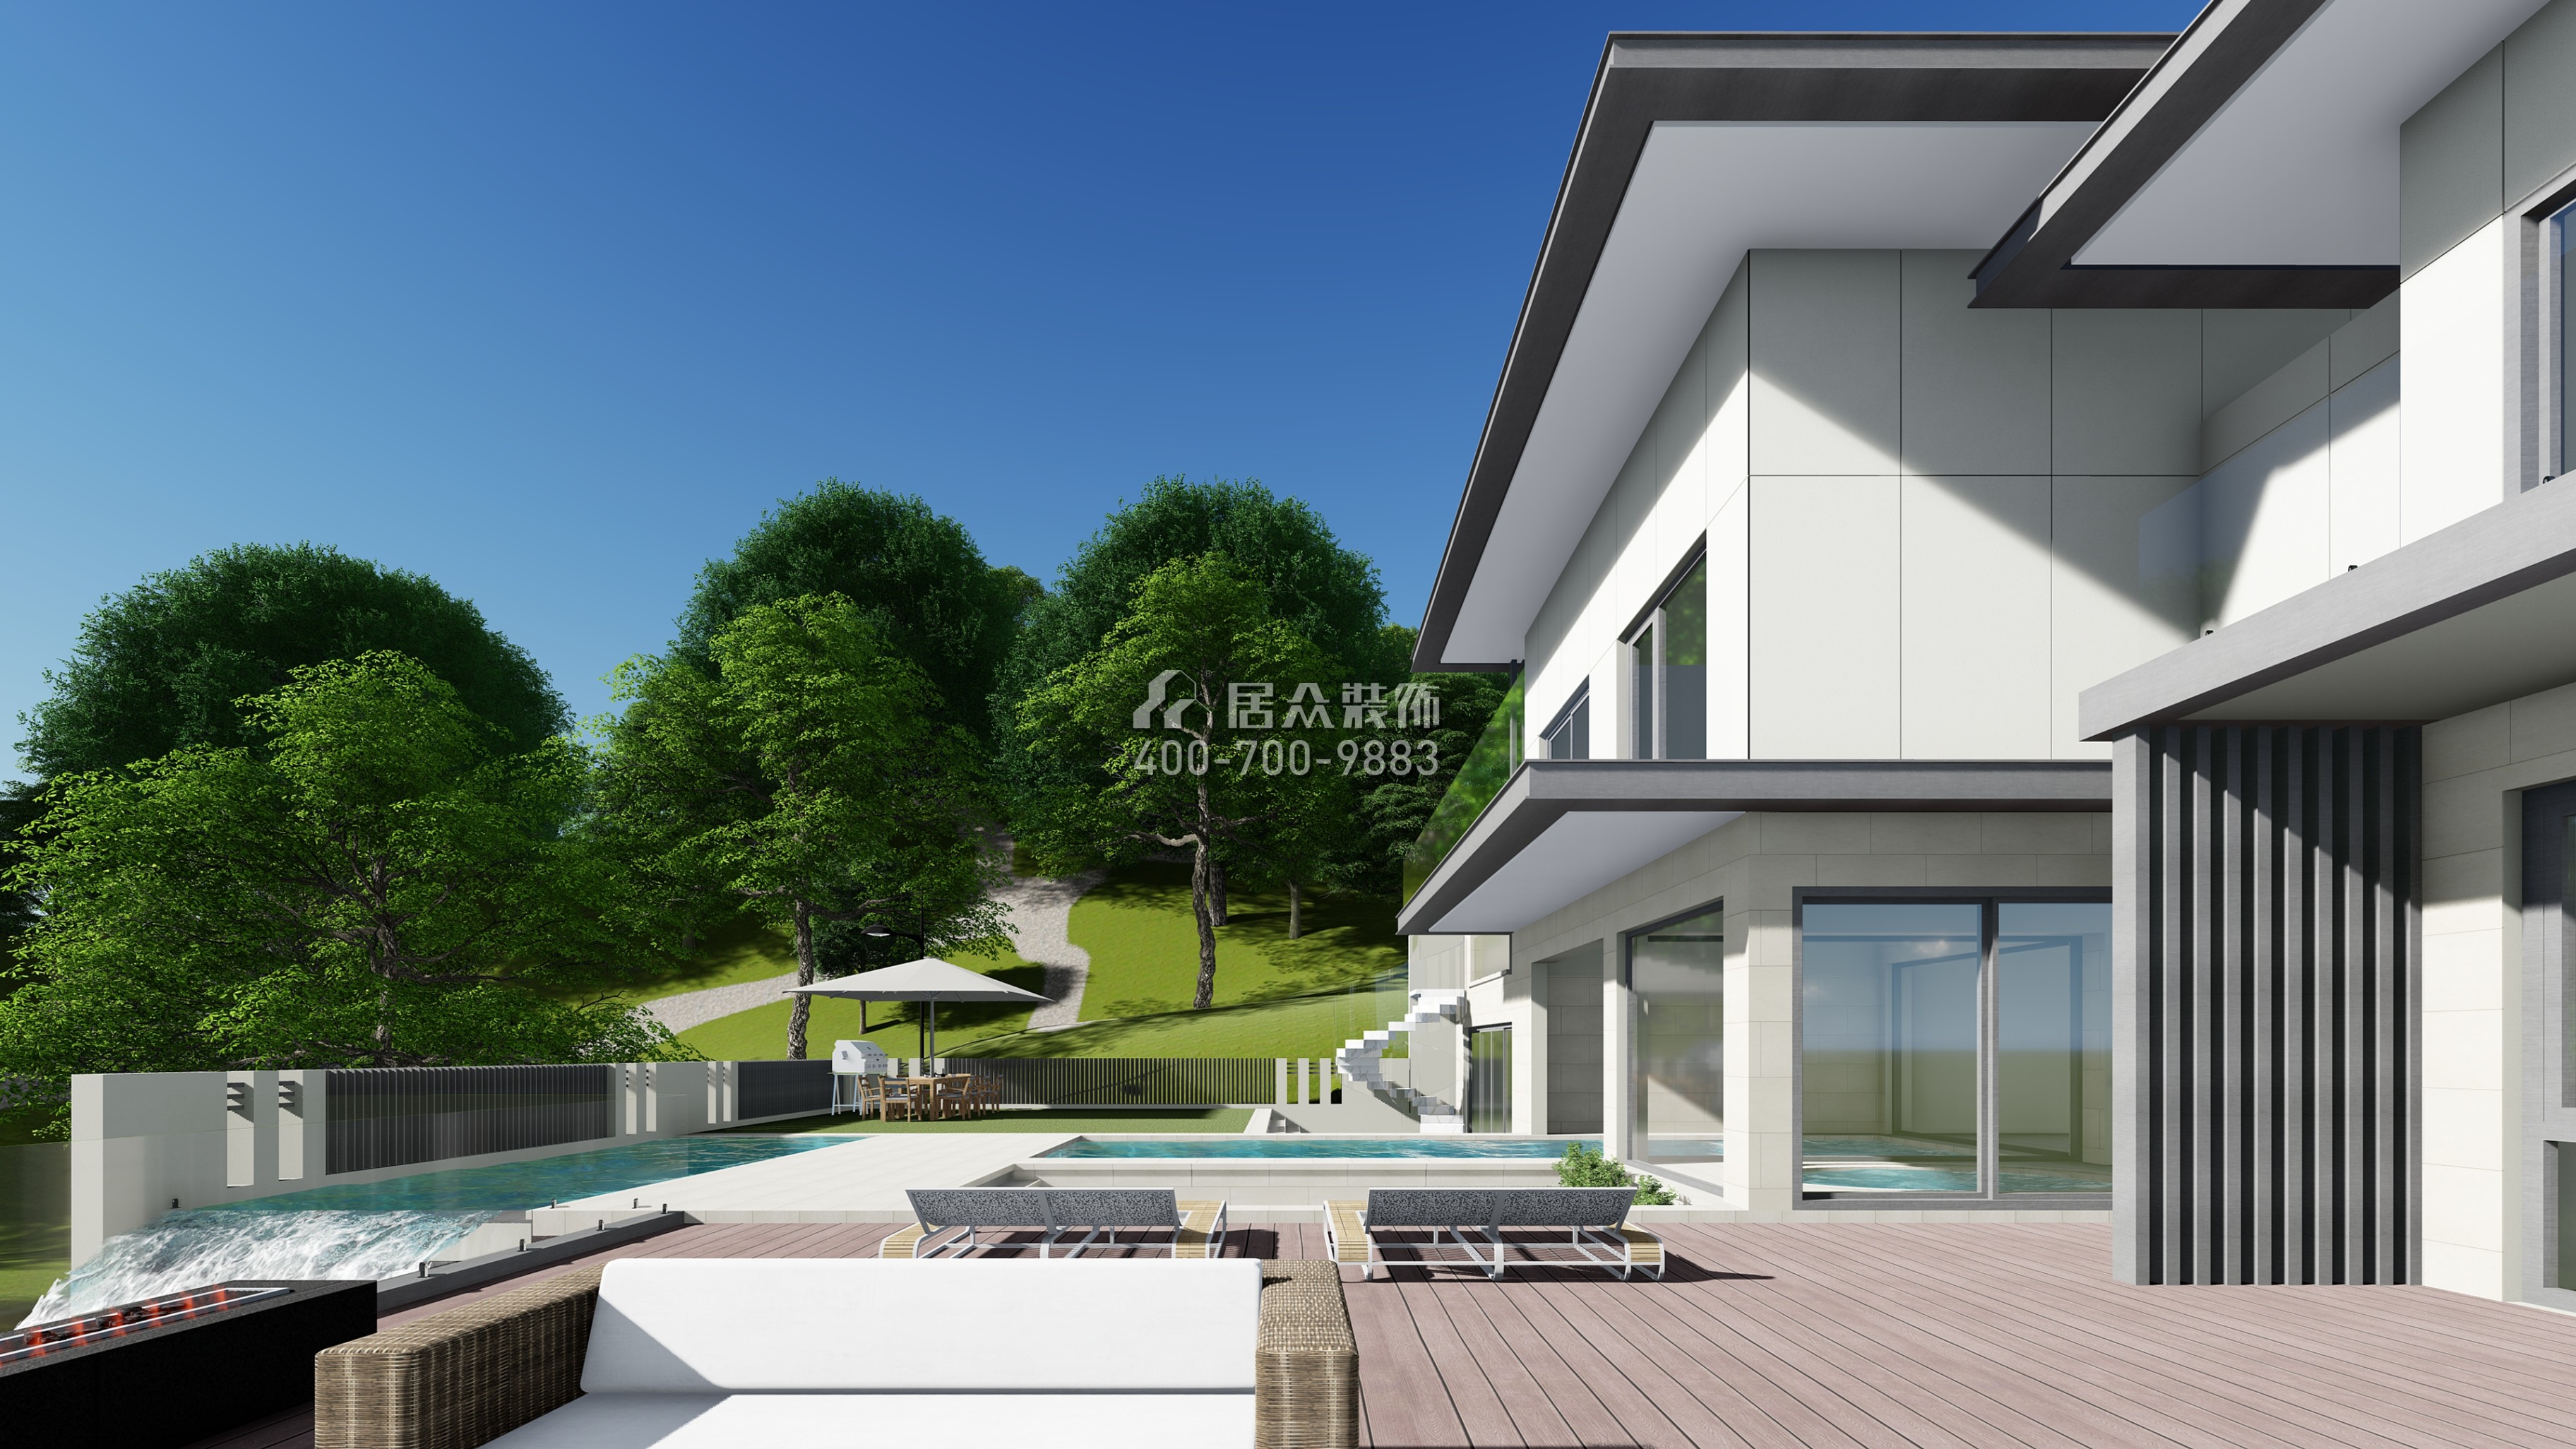 湘江壹号1200平方米现代简约风格别墅户型装修效果图